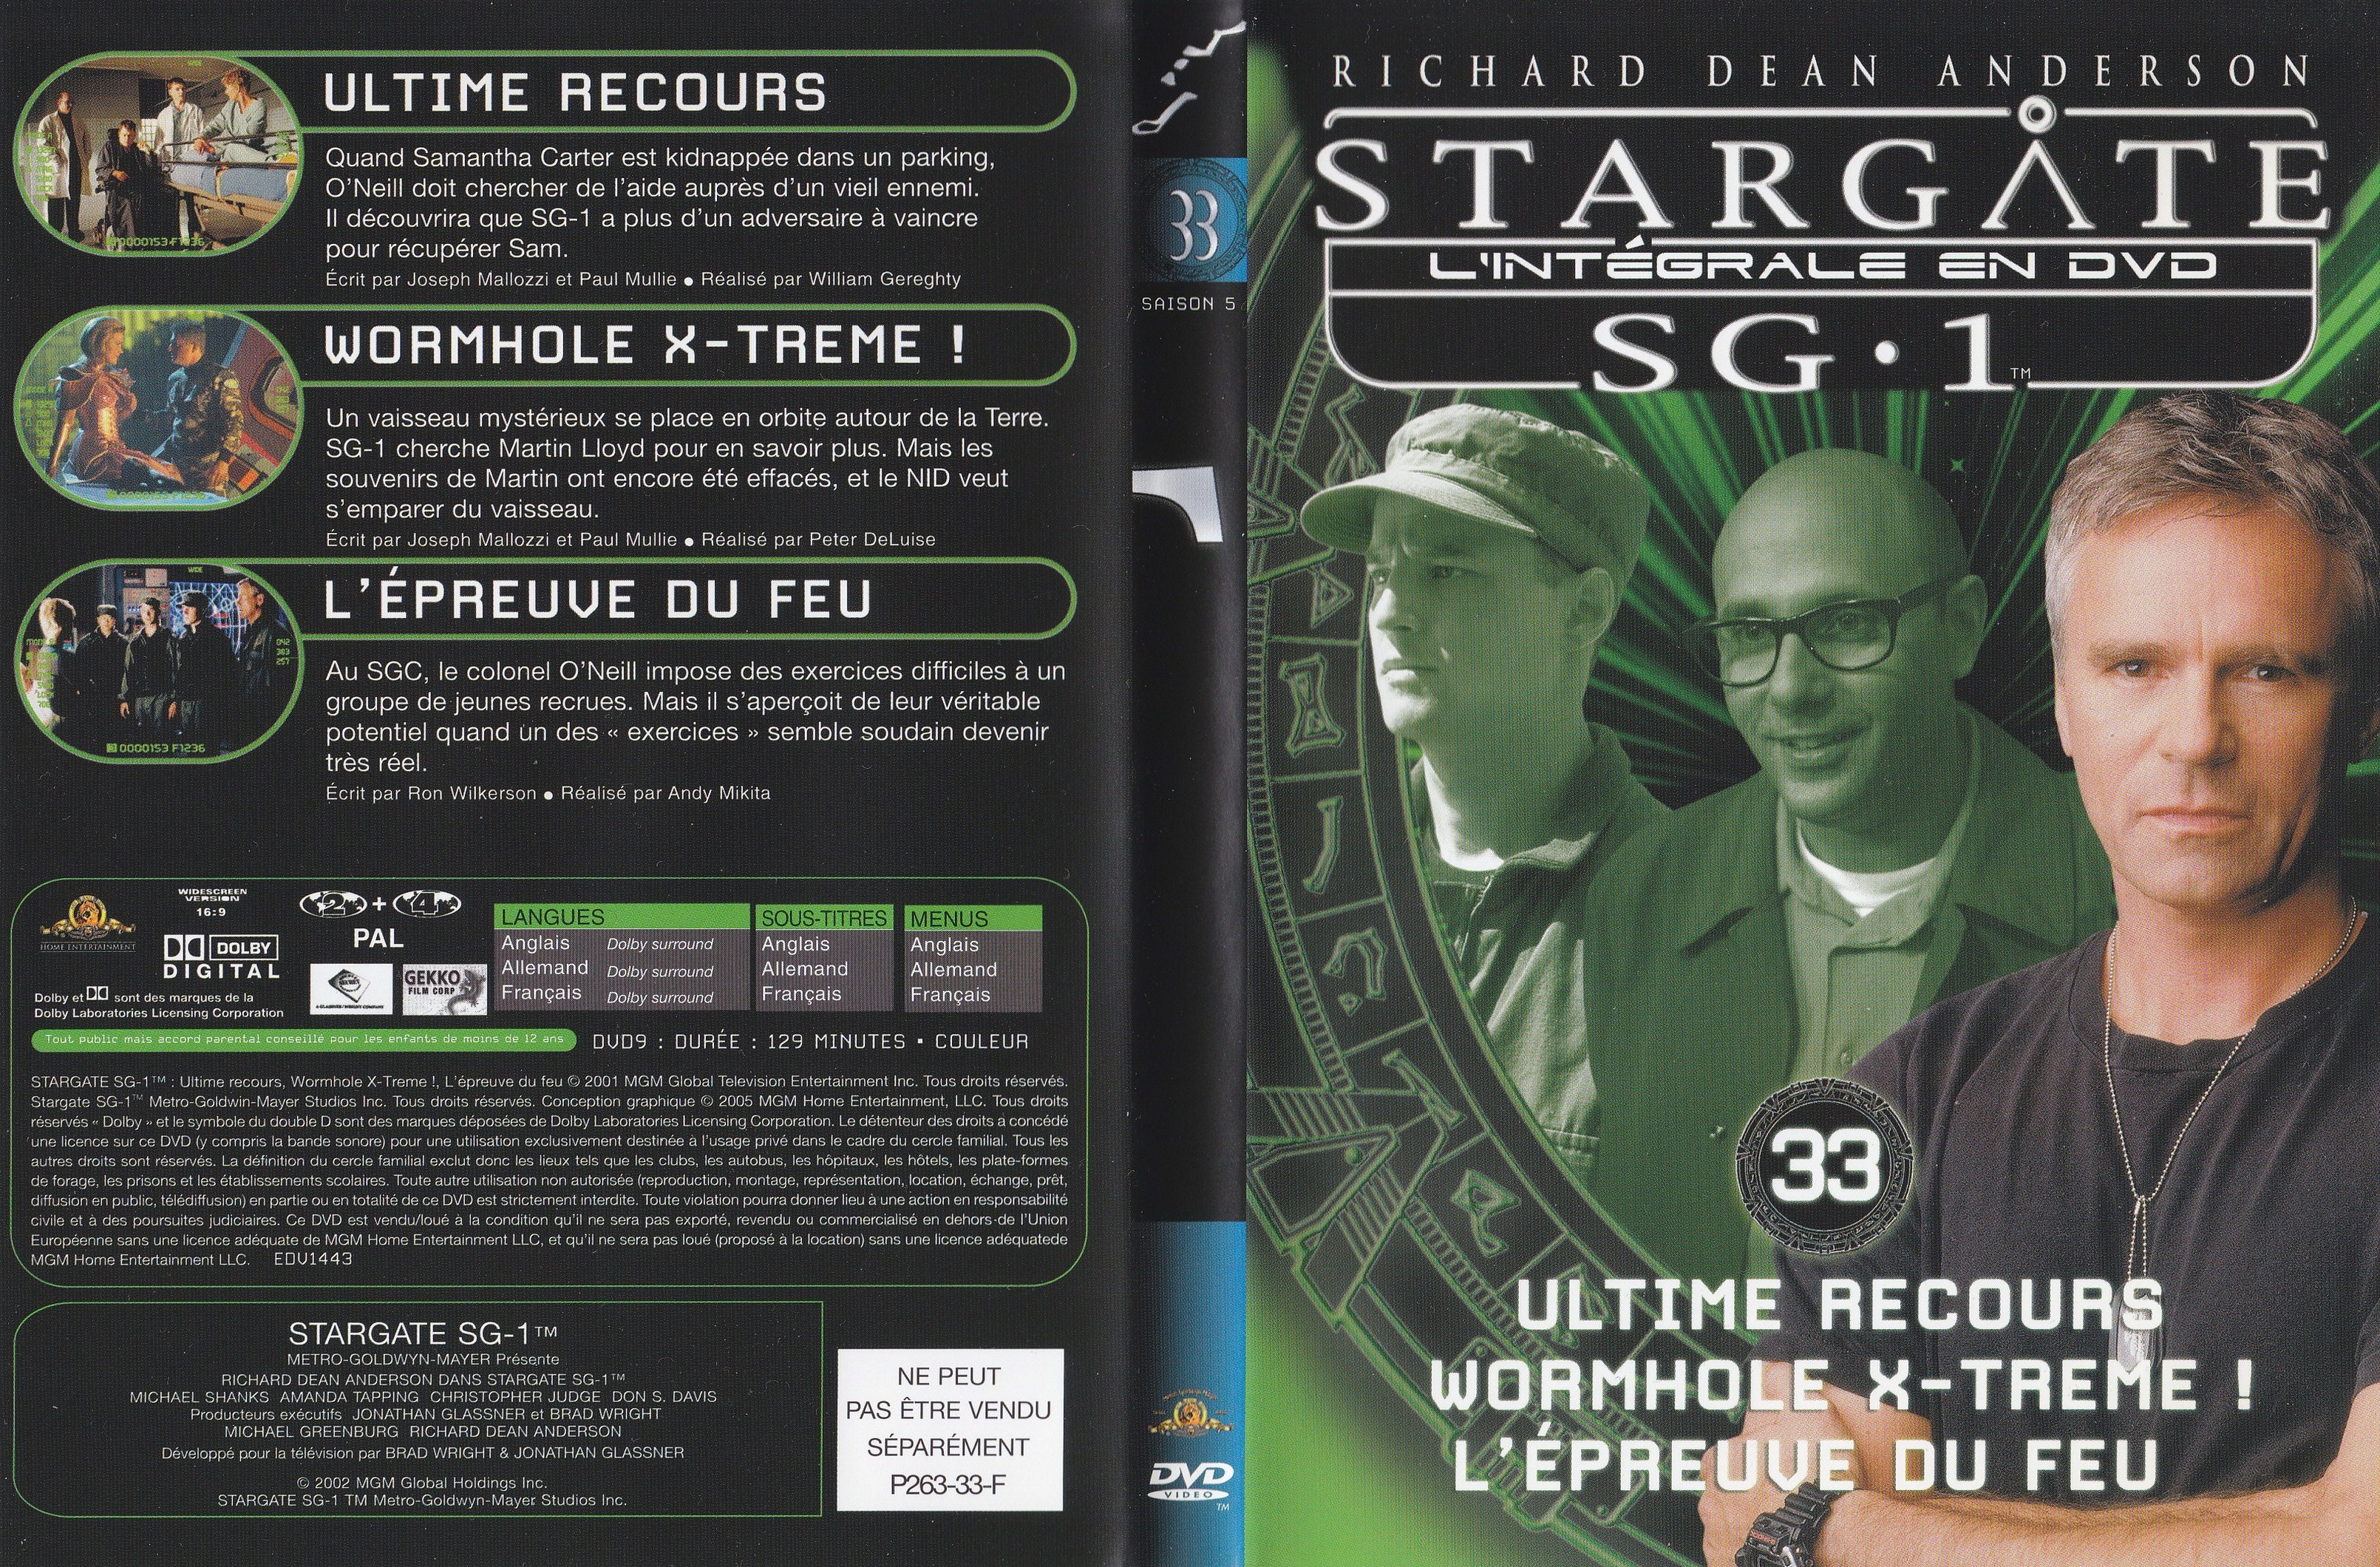 Stargate SG1 Intgrale Saison 5 vol 33